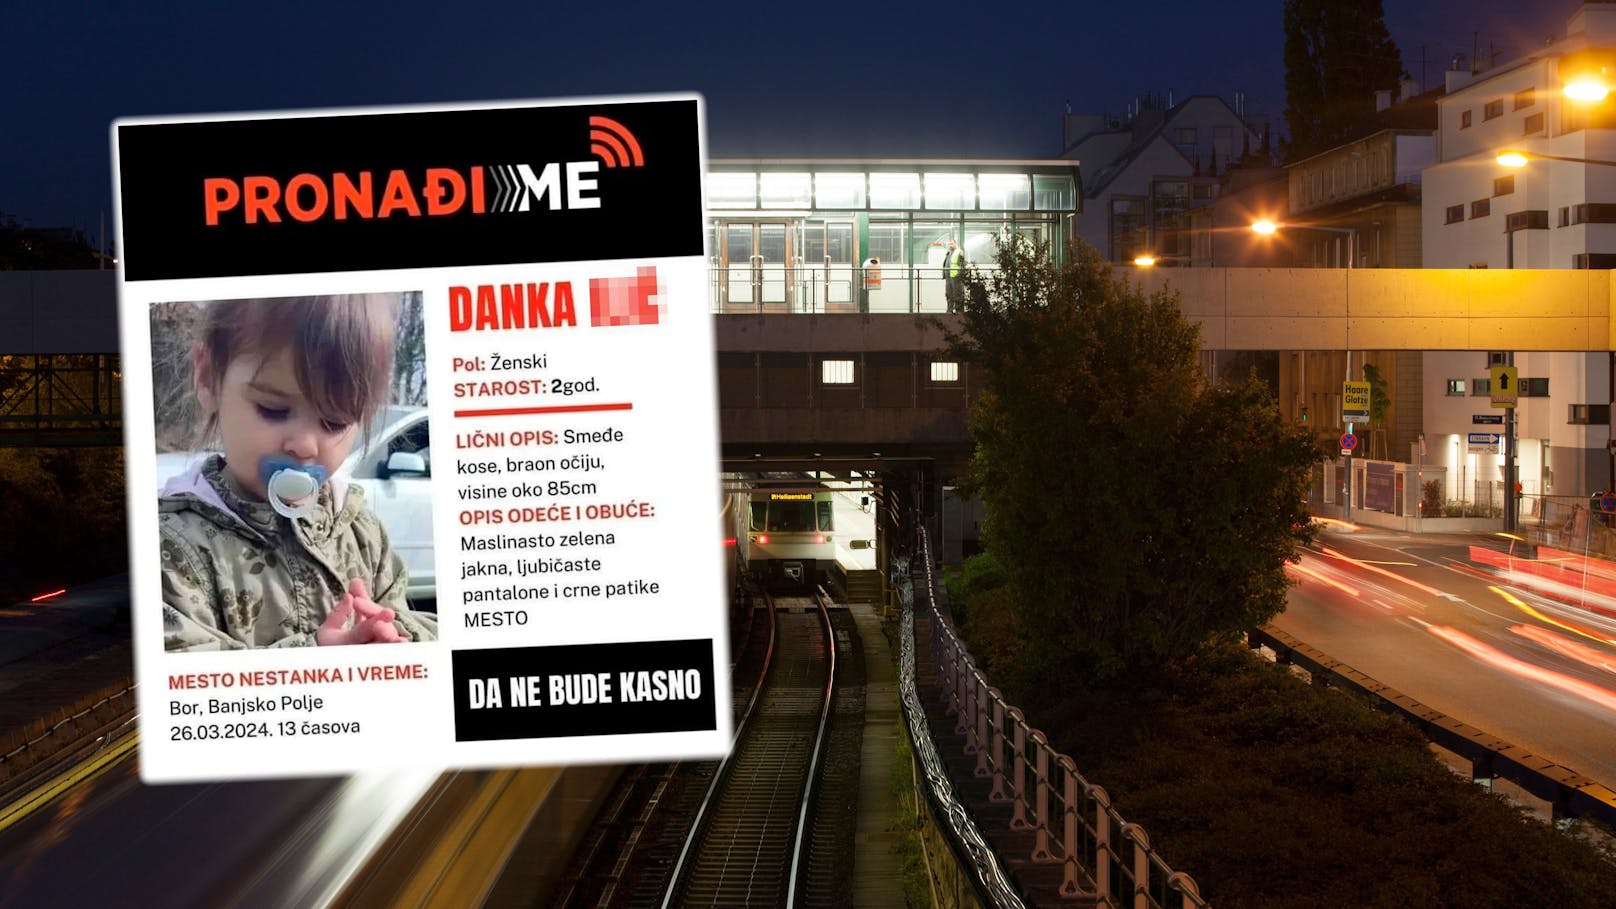 Danka (2) in Wien vermutet – jetzt spricht der Vater